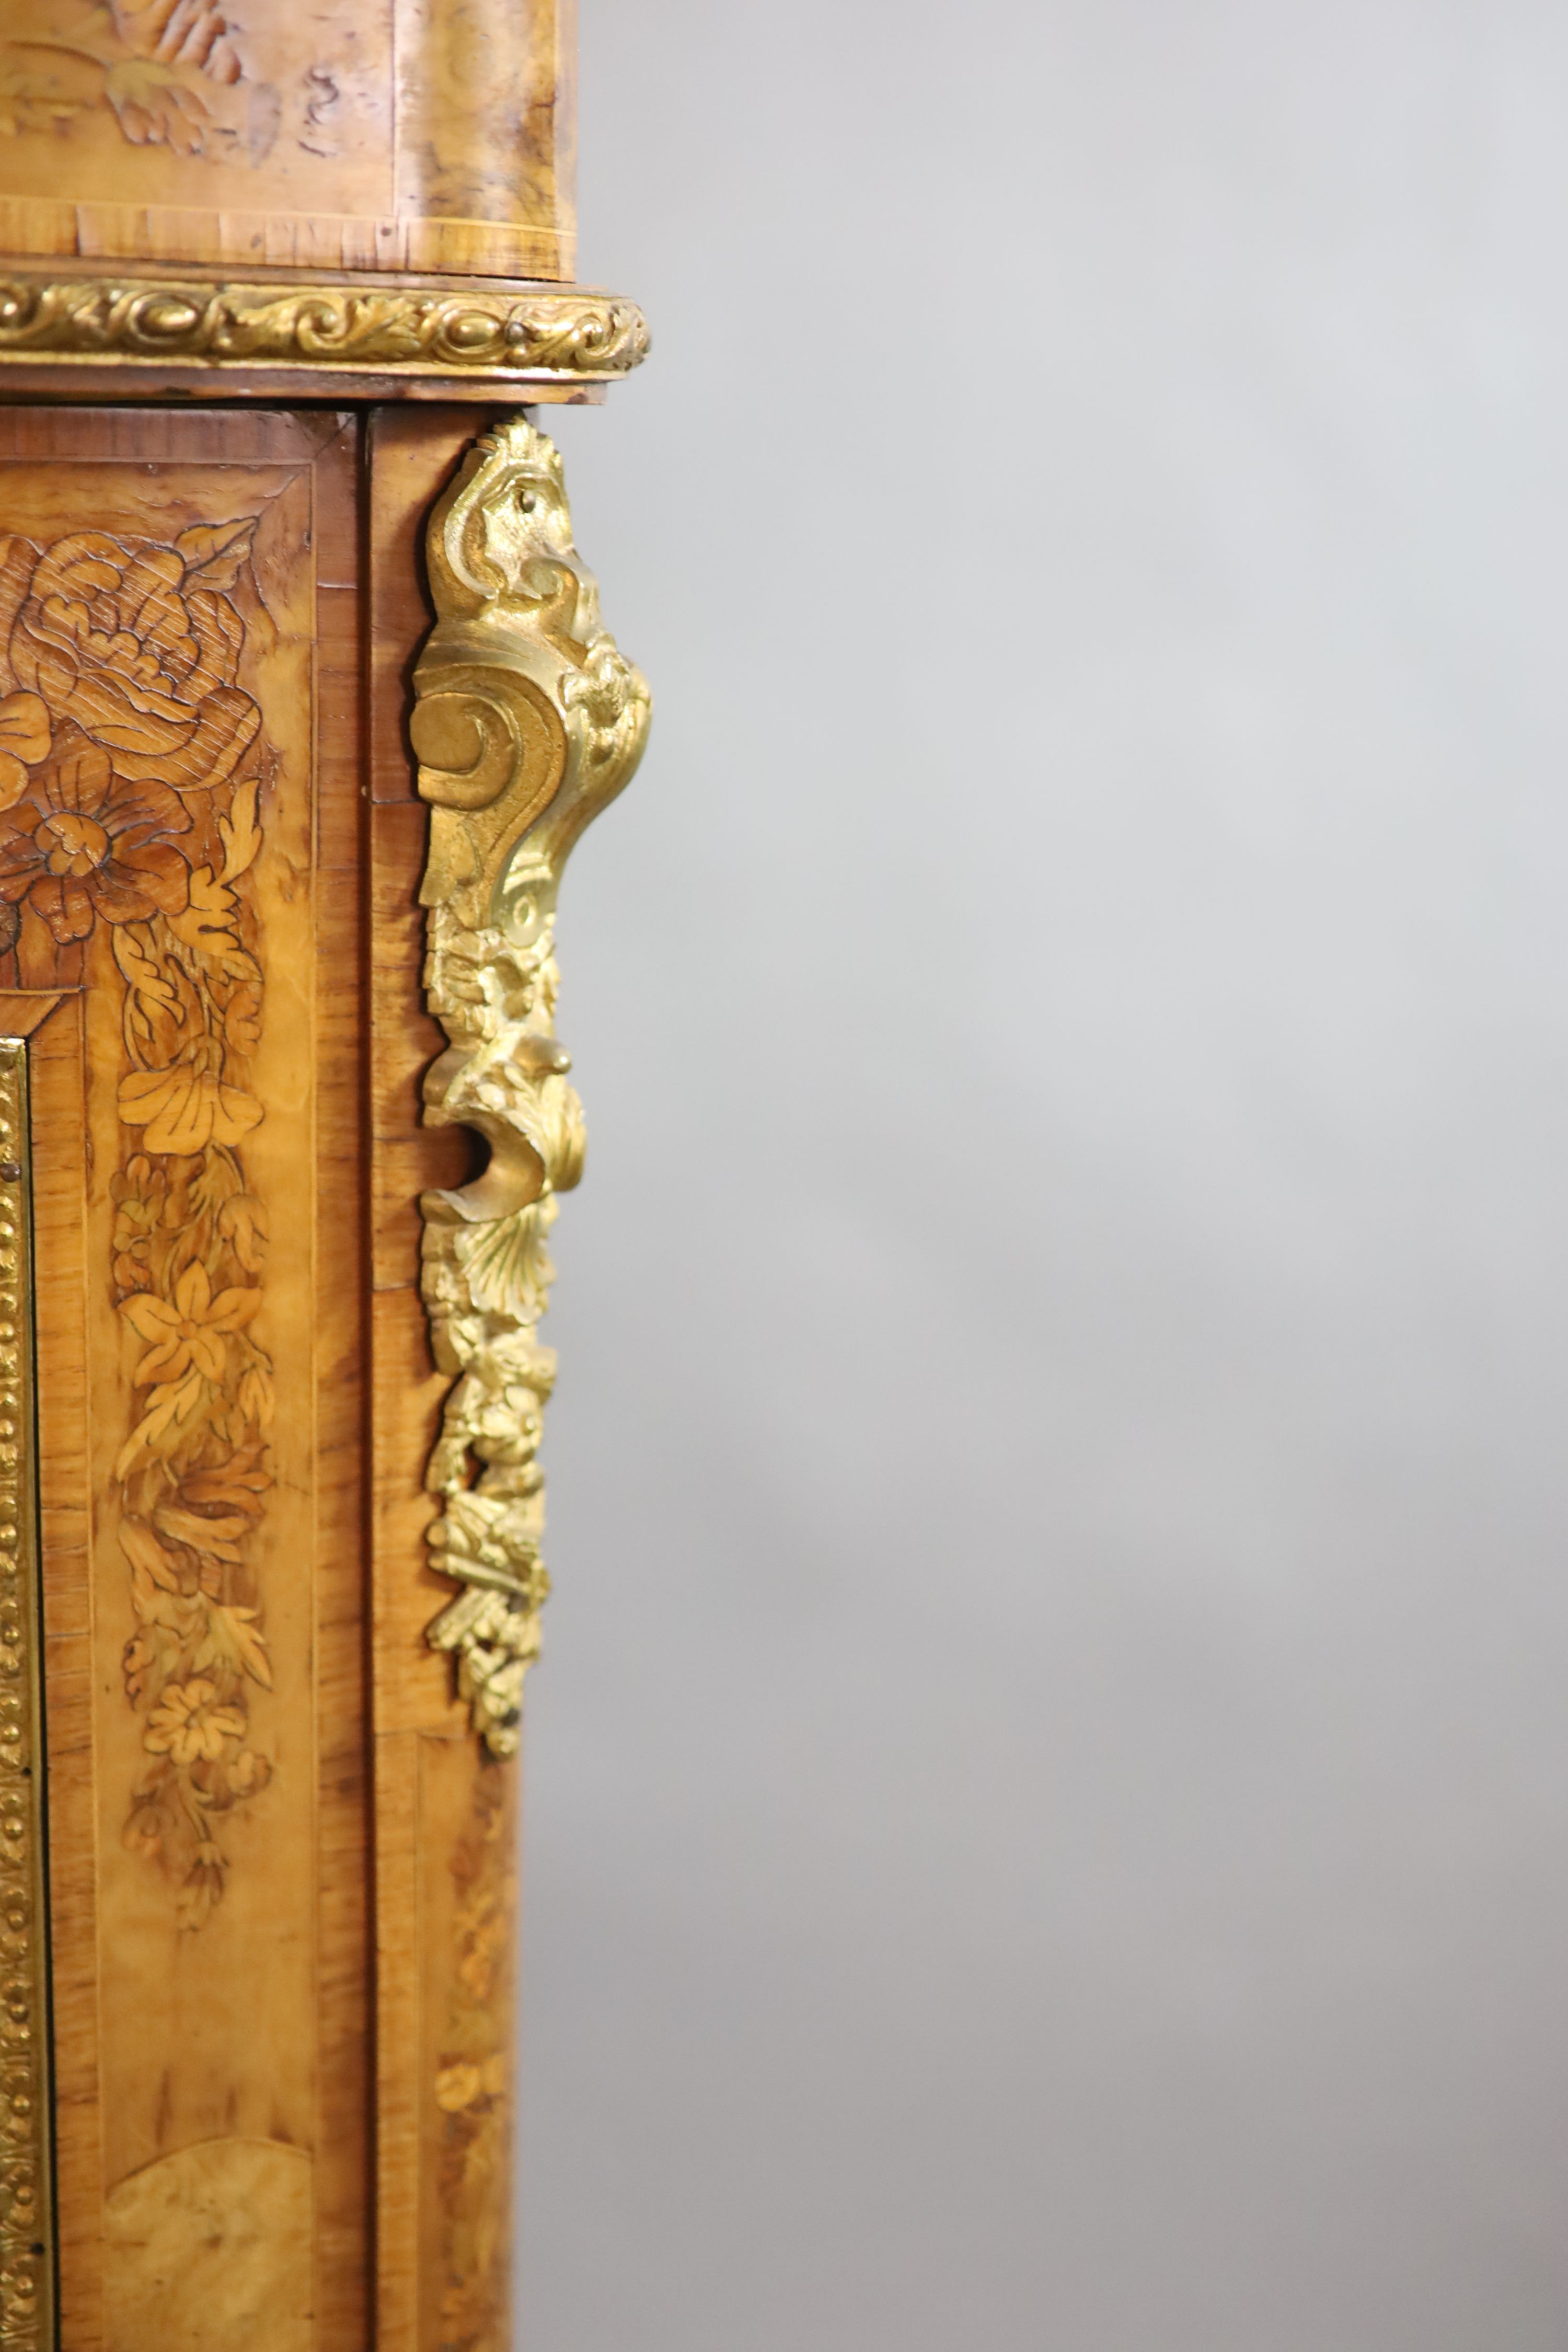 A Victorian ormolu mounted marquetry inlaid walnut bookcase, W.126cm D.38cm H.115cm